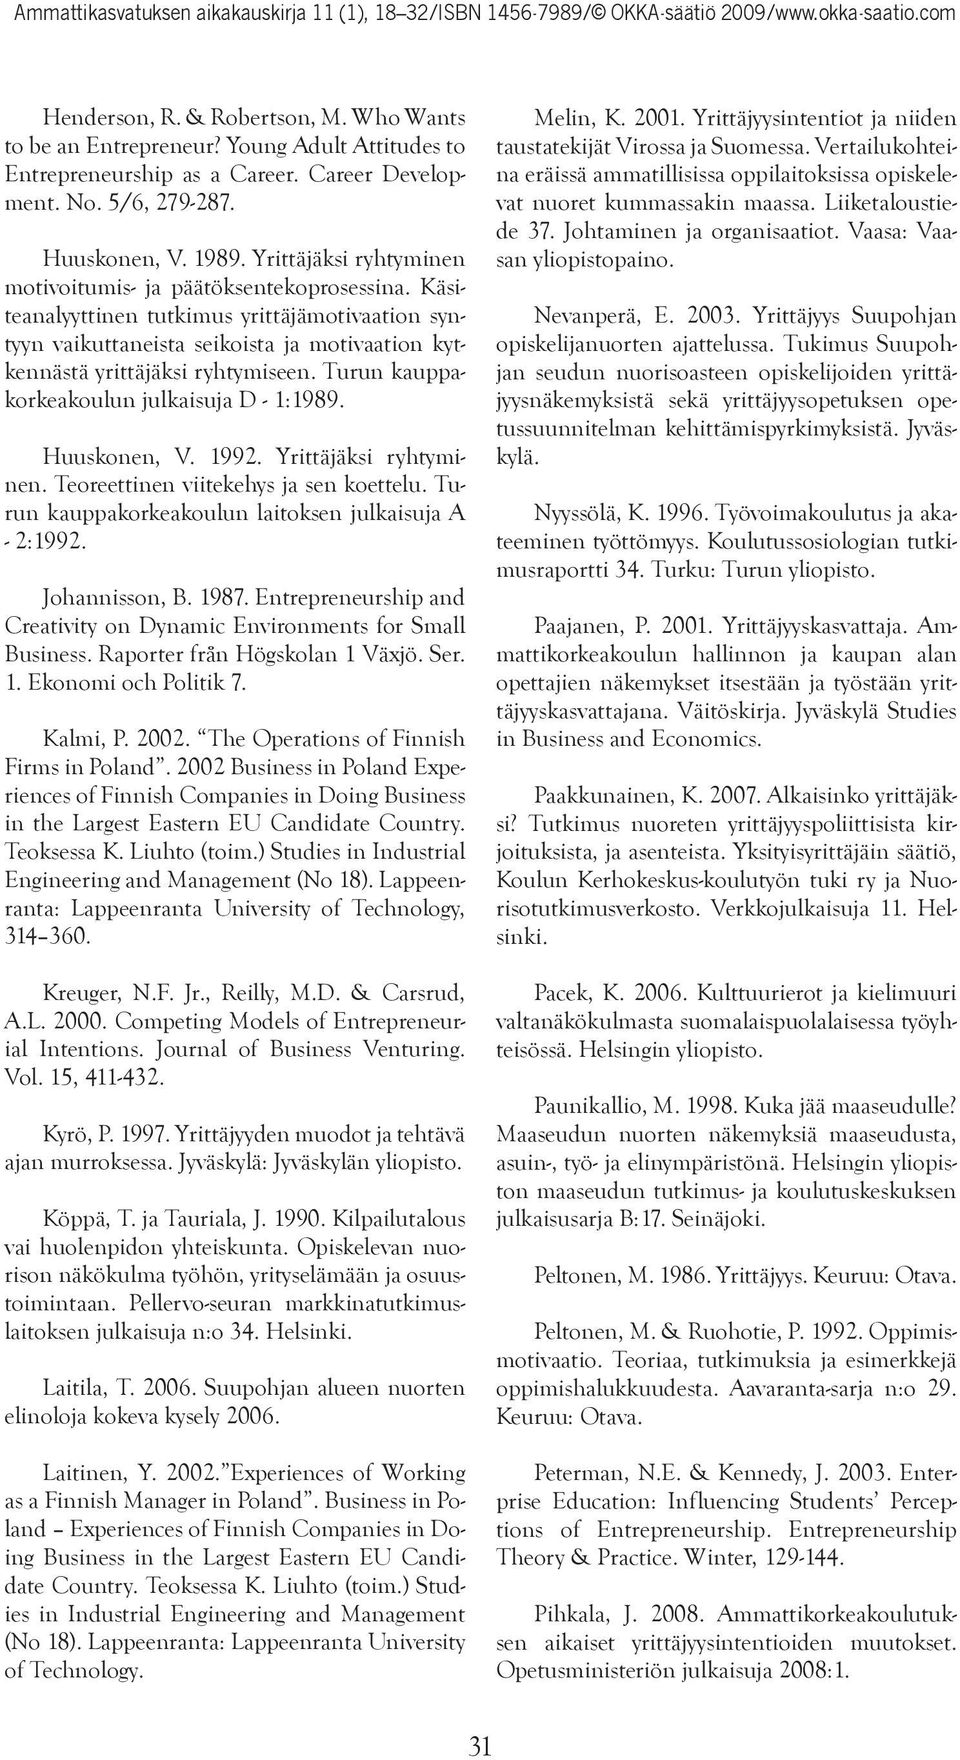 Turun kauppakorkeakoulun julkaisuja D - 1:1989. Huuskonen, V. 1992. Yrittäjäksi ryhtyminen. Teoreettinen viitekehys ja sen koettelu. Turun kauppakorkeakoulun laitoksen julkaisuja A - 2:1992.